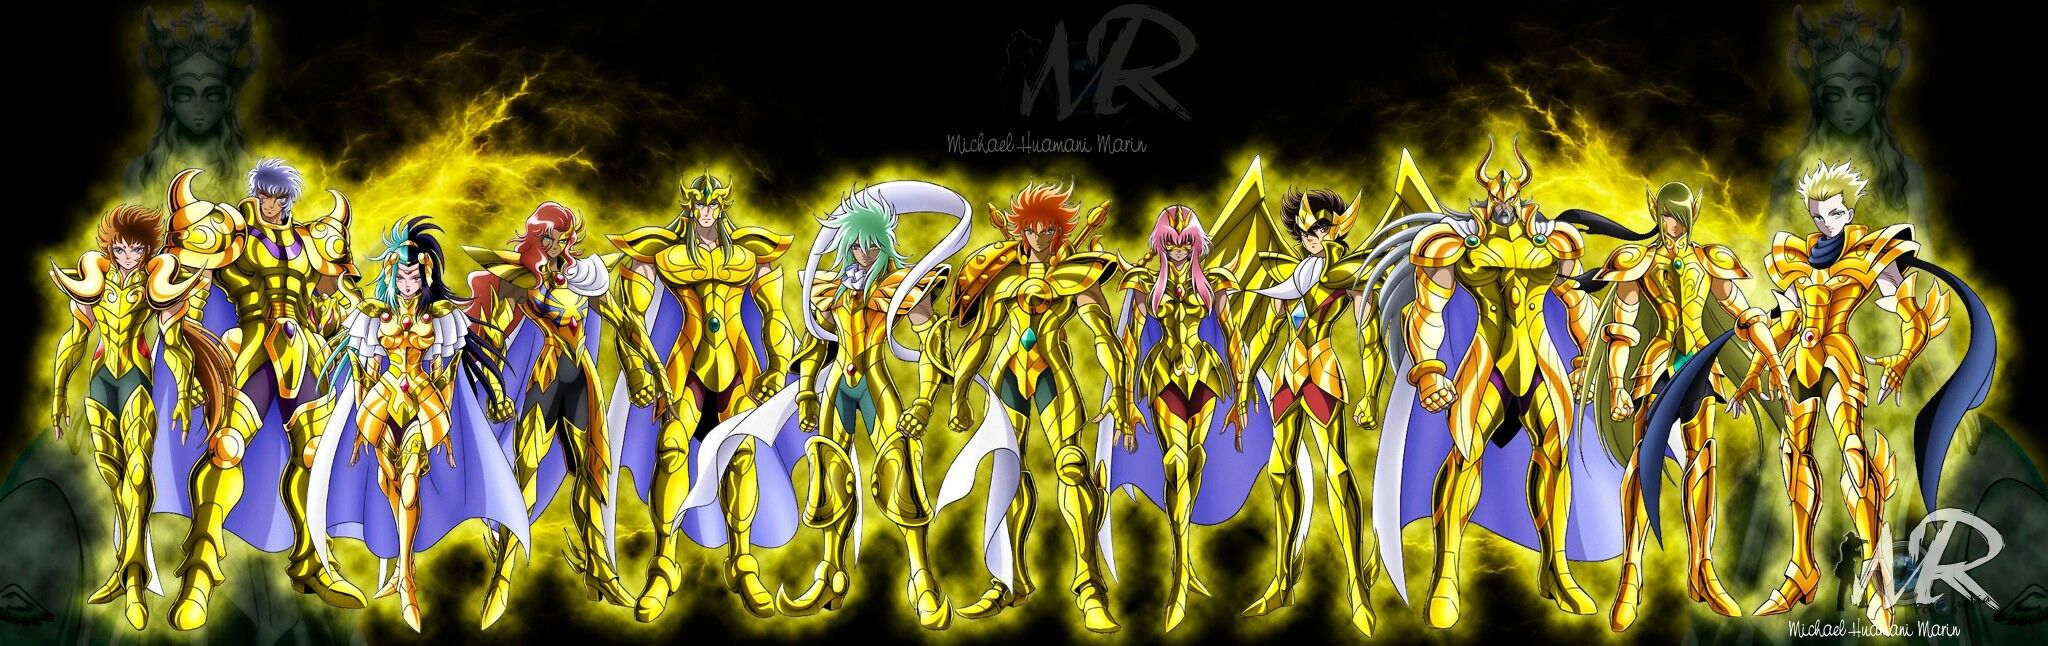 Future Gold saints in Omega : r/SaintSeiya